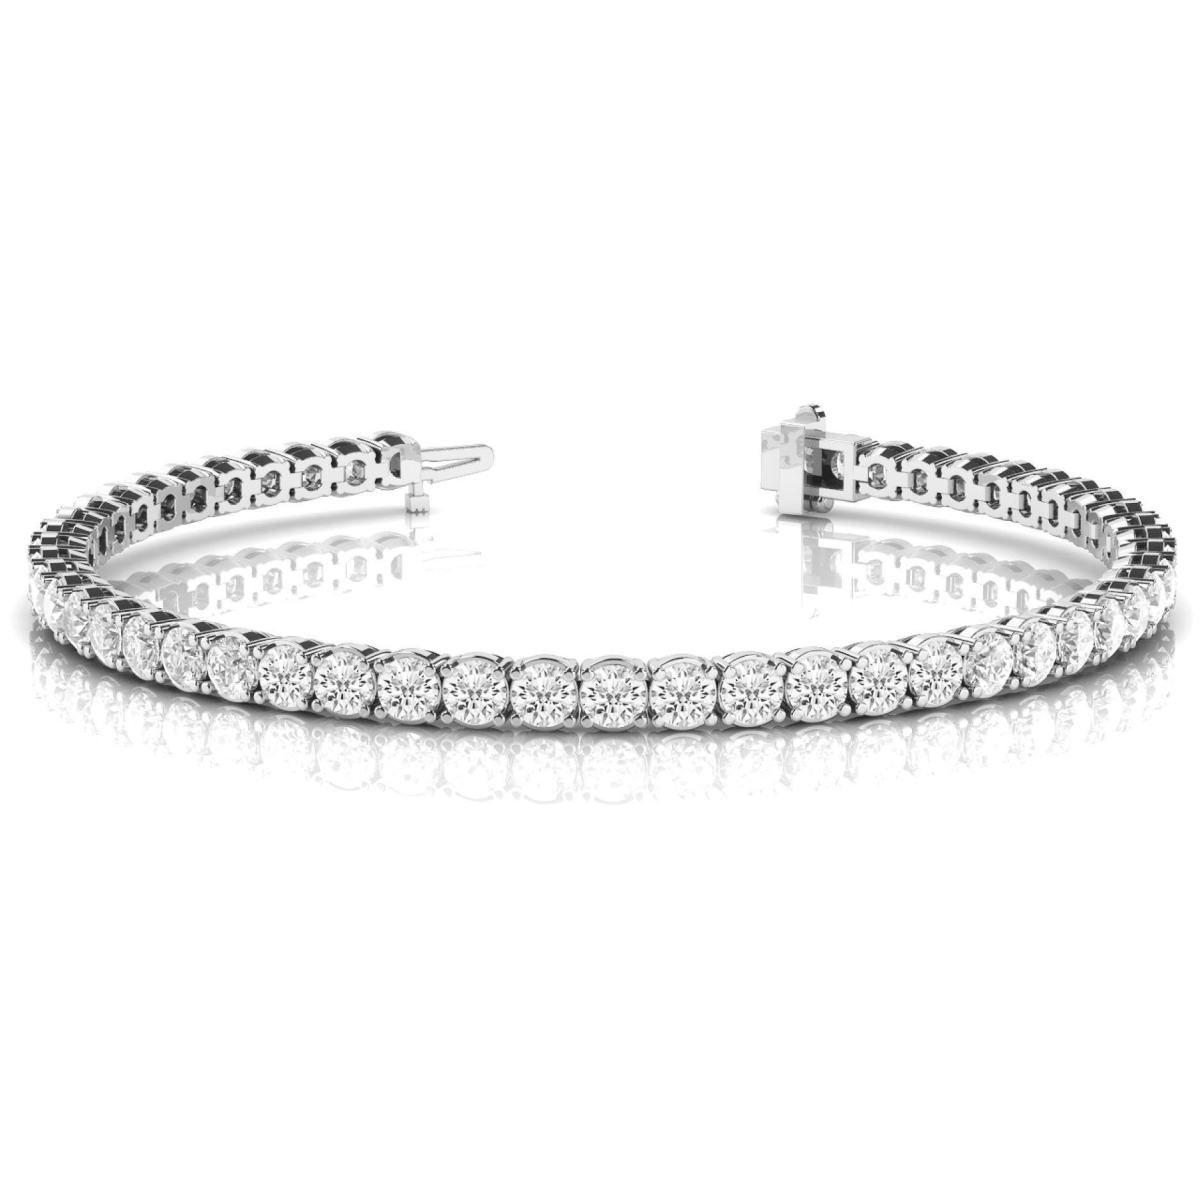 Harry Chad Enterprises 60375 7.50 CT Round Cut Sparkling Diamonds Tennis Bracelet